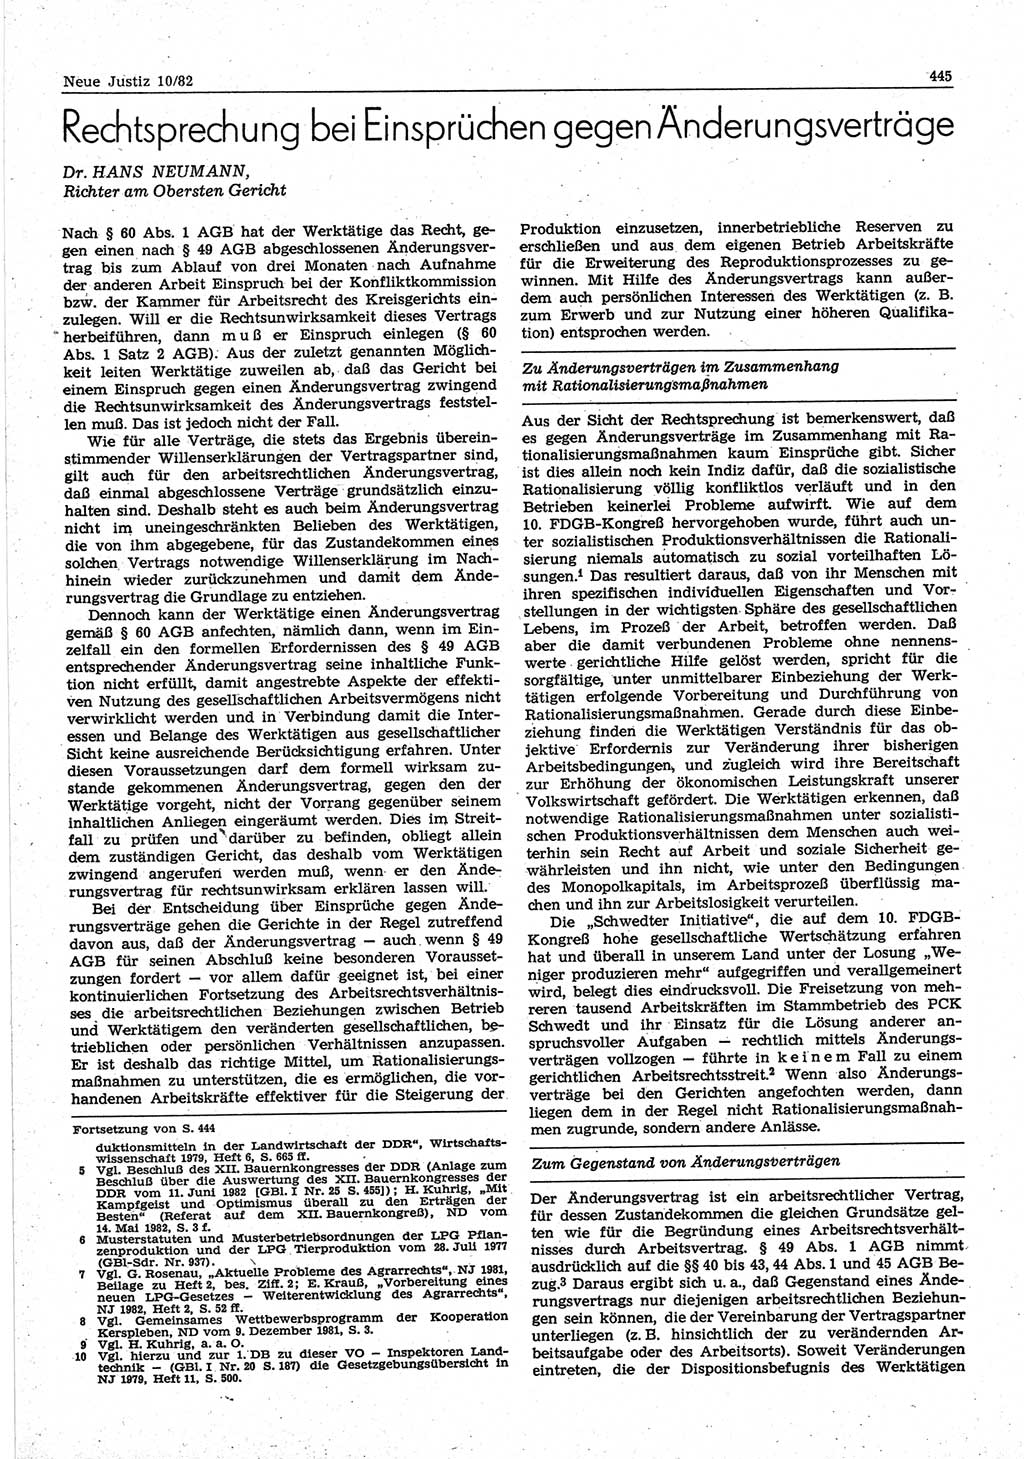 Neue Justiz (NJ), Zeitschrift für sozialistisches Recht und Gesetzlichkeit [Deutsche Demokratische Republik (DDR)], 36. Jahrgang 1982, Seite 445 (NJ DDR 1982, S. 445)